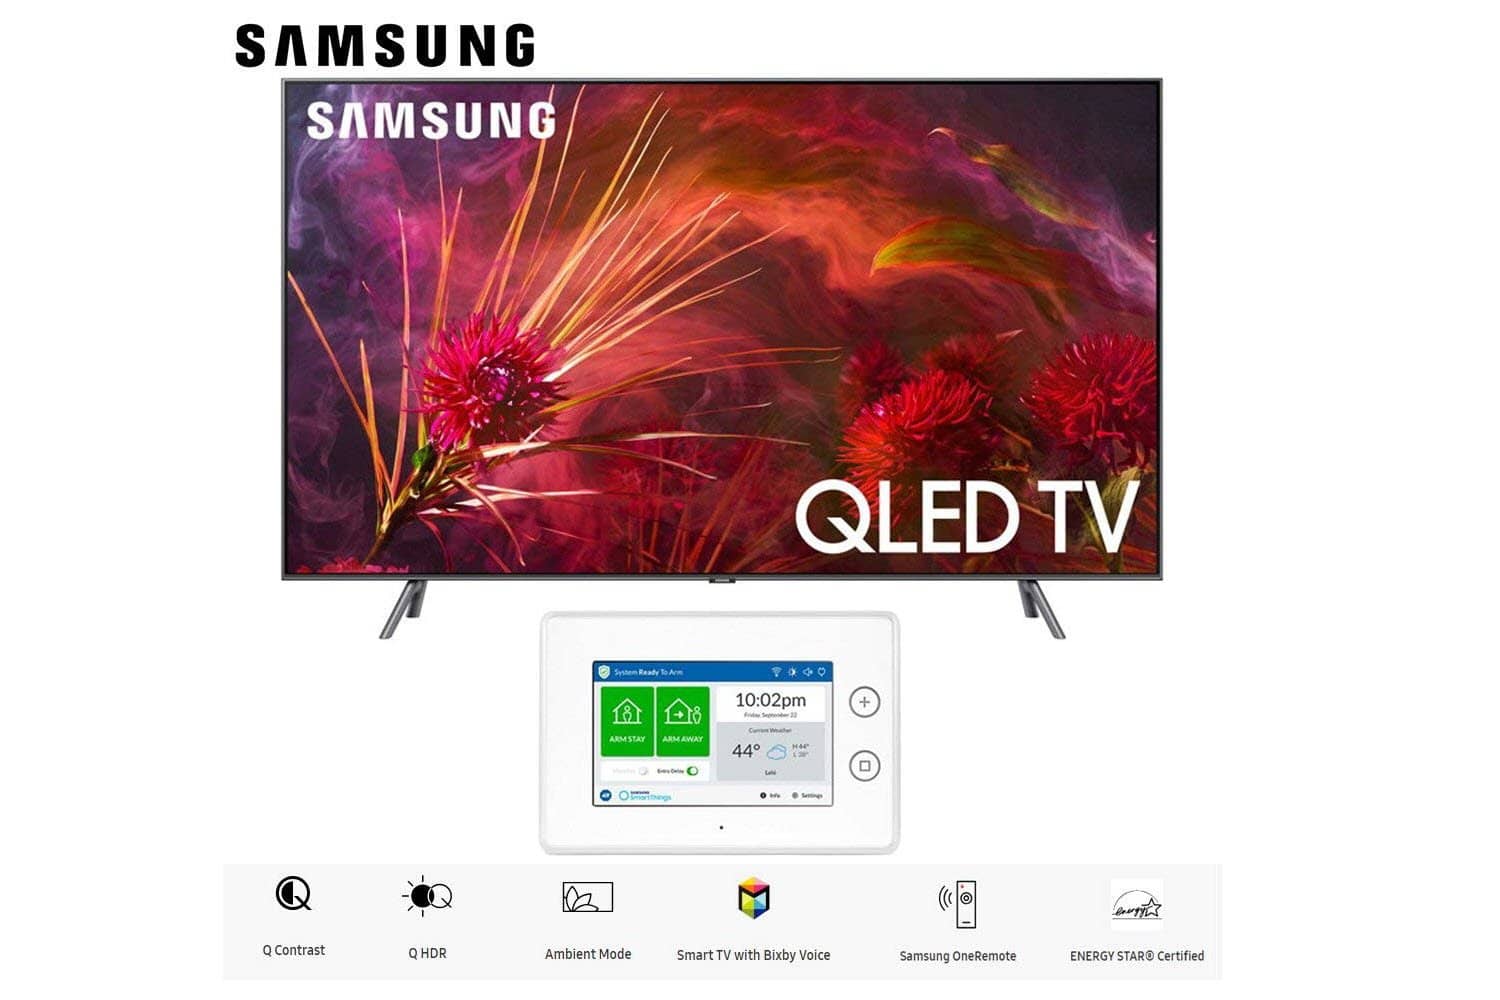 Samsung Q8FN Smart 4K Ultra HD QLED TV (2018) Bundle (55-Inch + Home Security Kit)